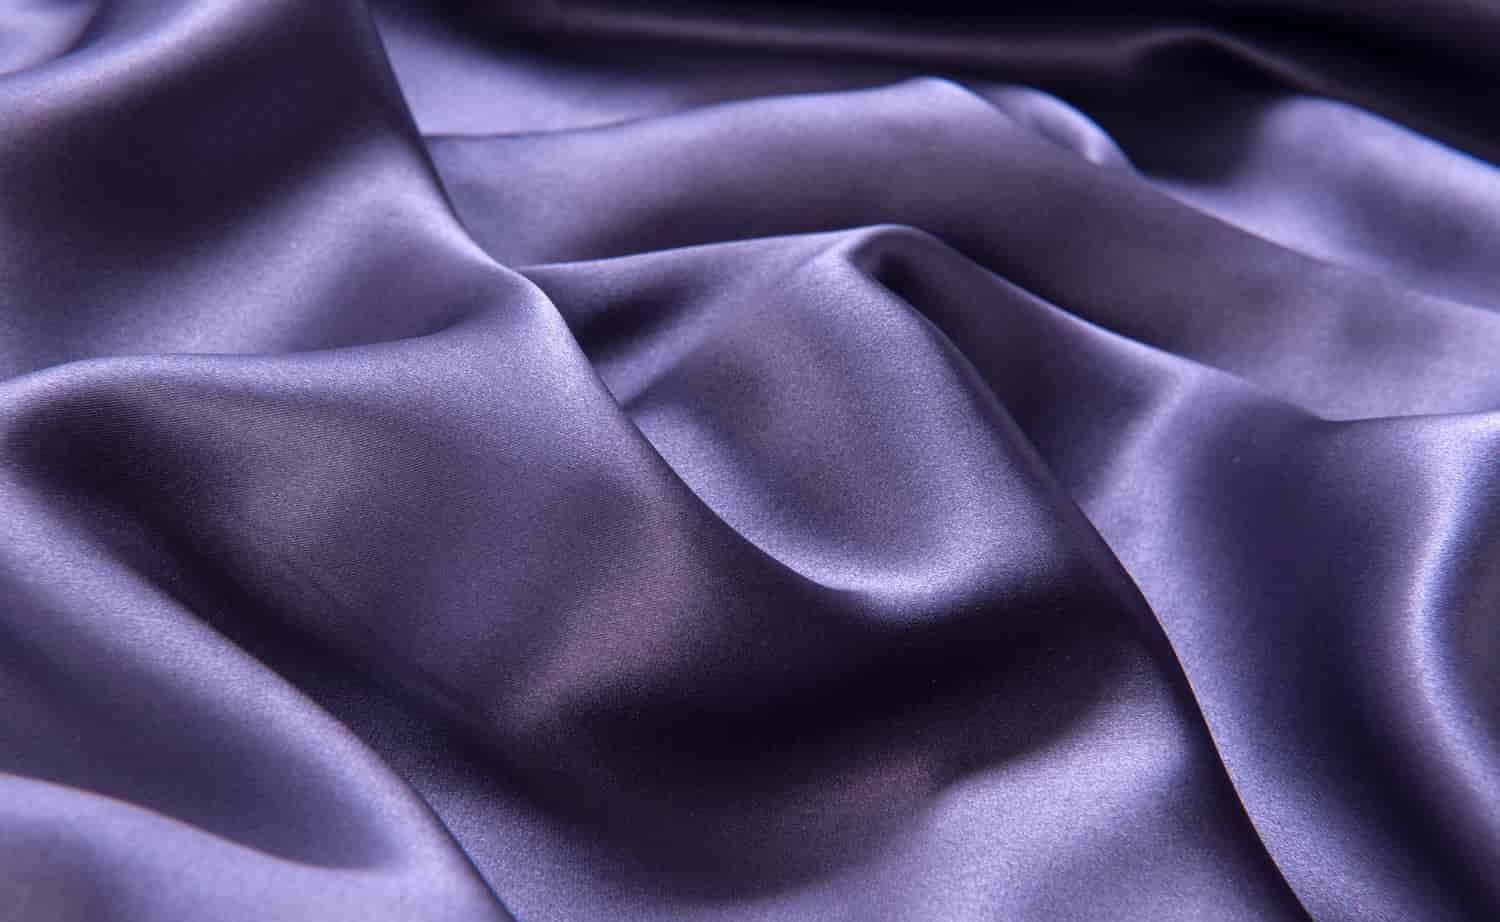 استخدام اقمشة الحرير الطبيعي في إنتاج الملابس الفريدة